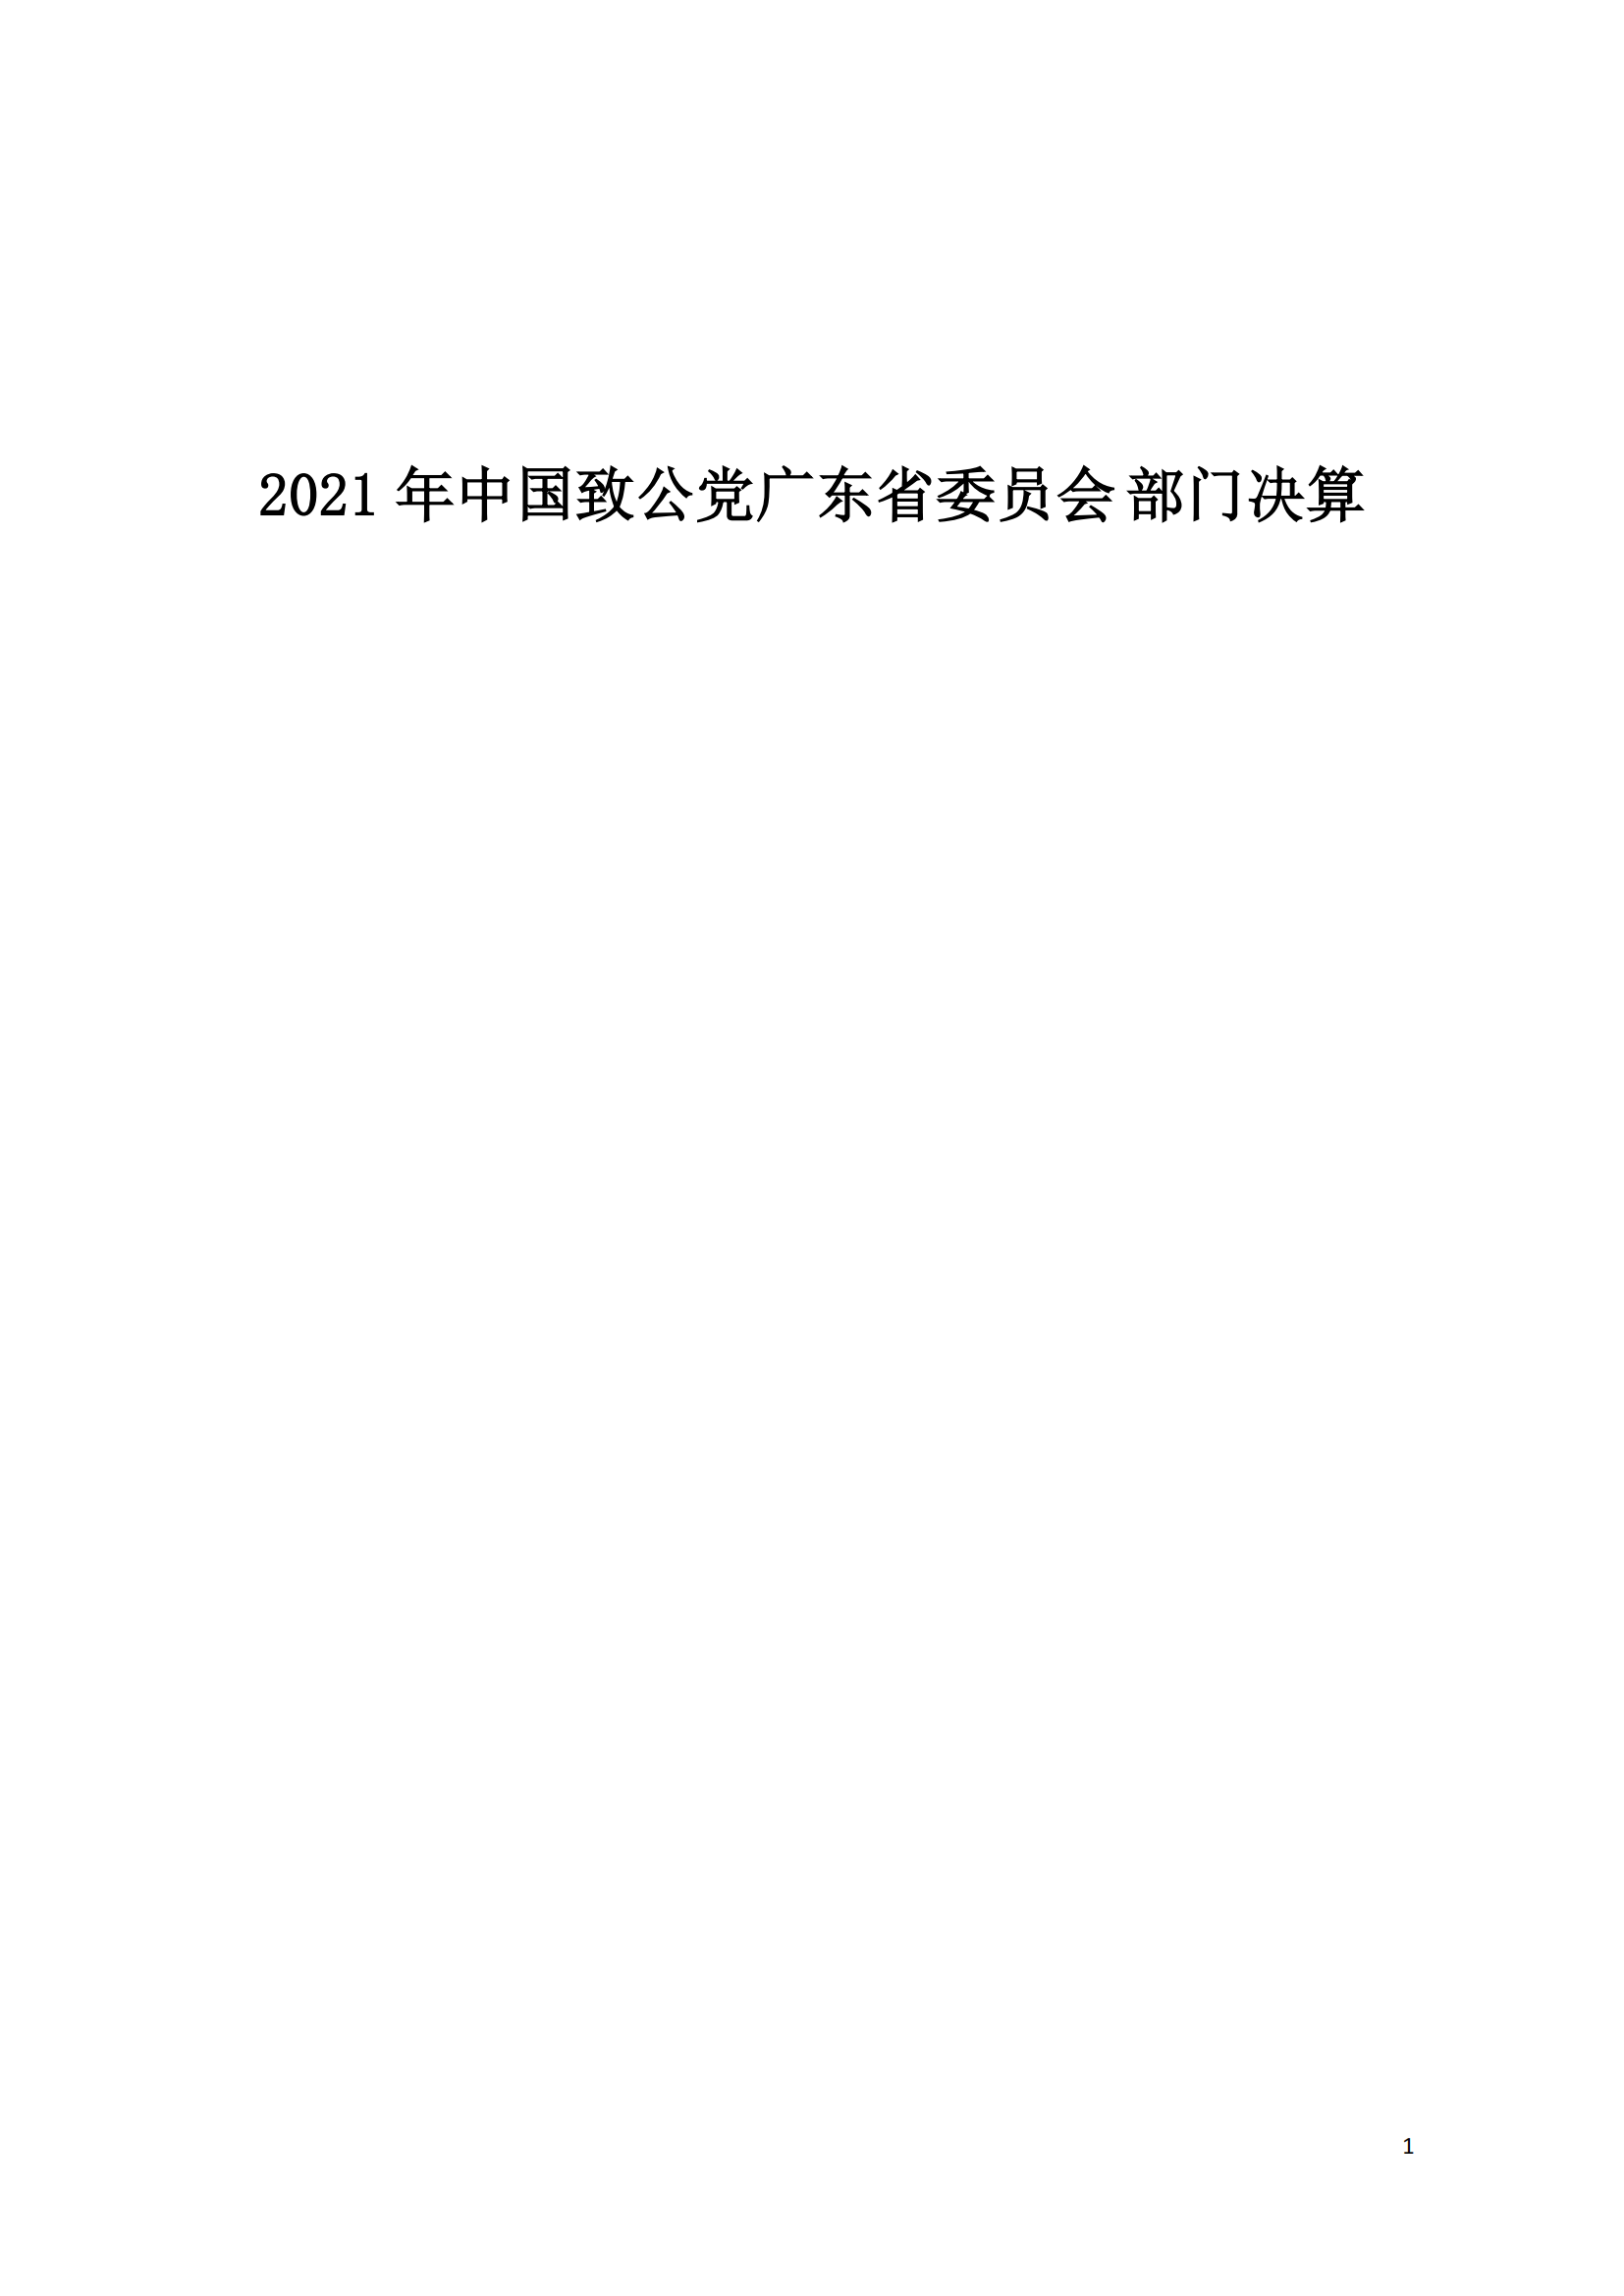 2021年中国致公党广东省委员会部门决算（0706更新）_00.png